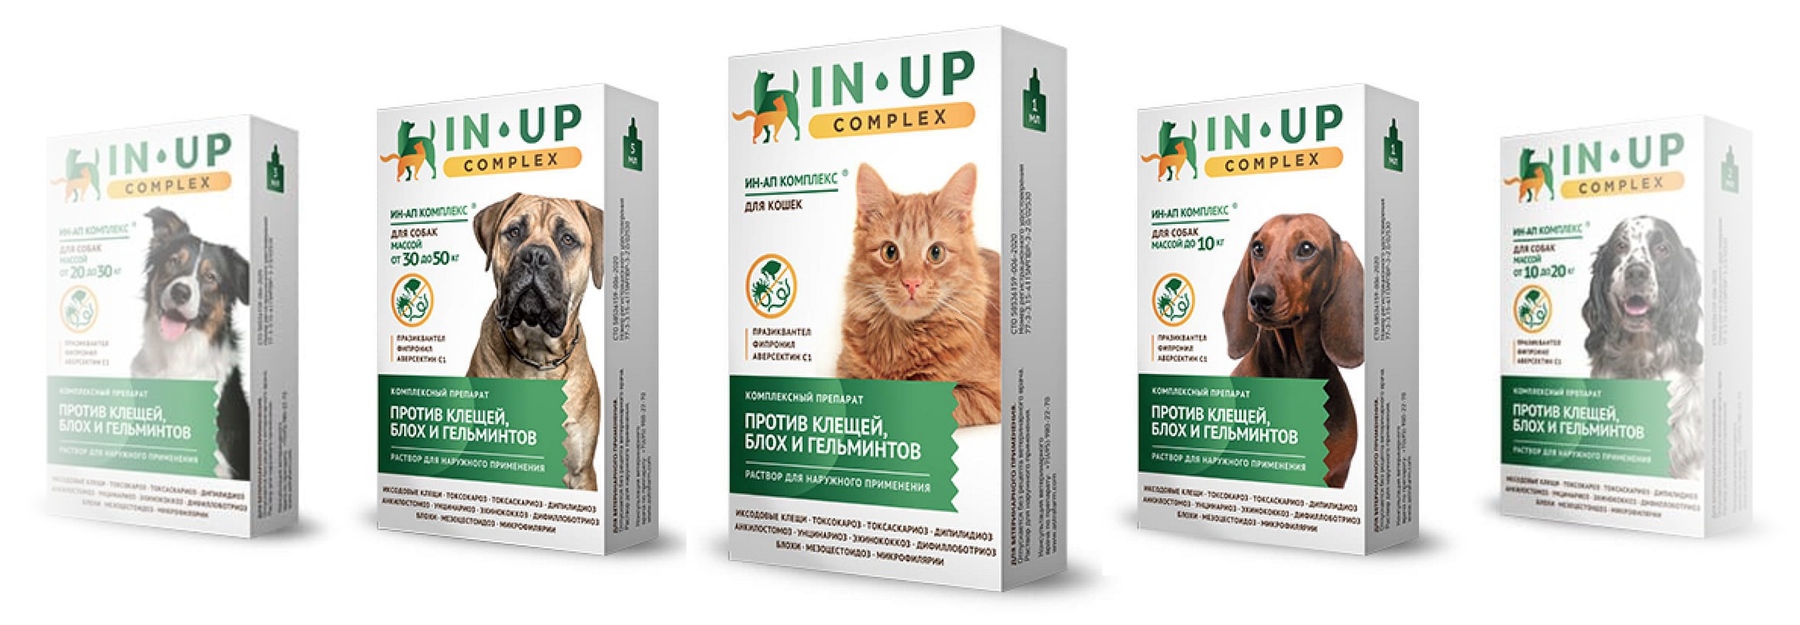 купить Антипаразитарные средства для собак и кошек IN-UP complex с бесплатной доставкой в Калининграде